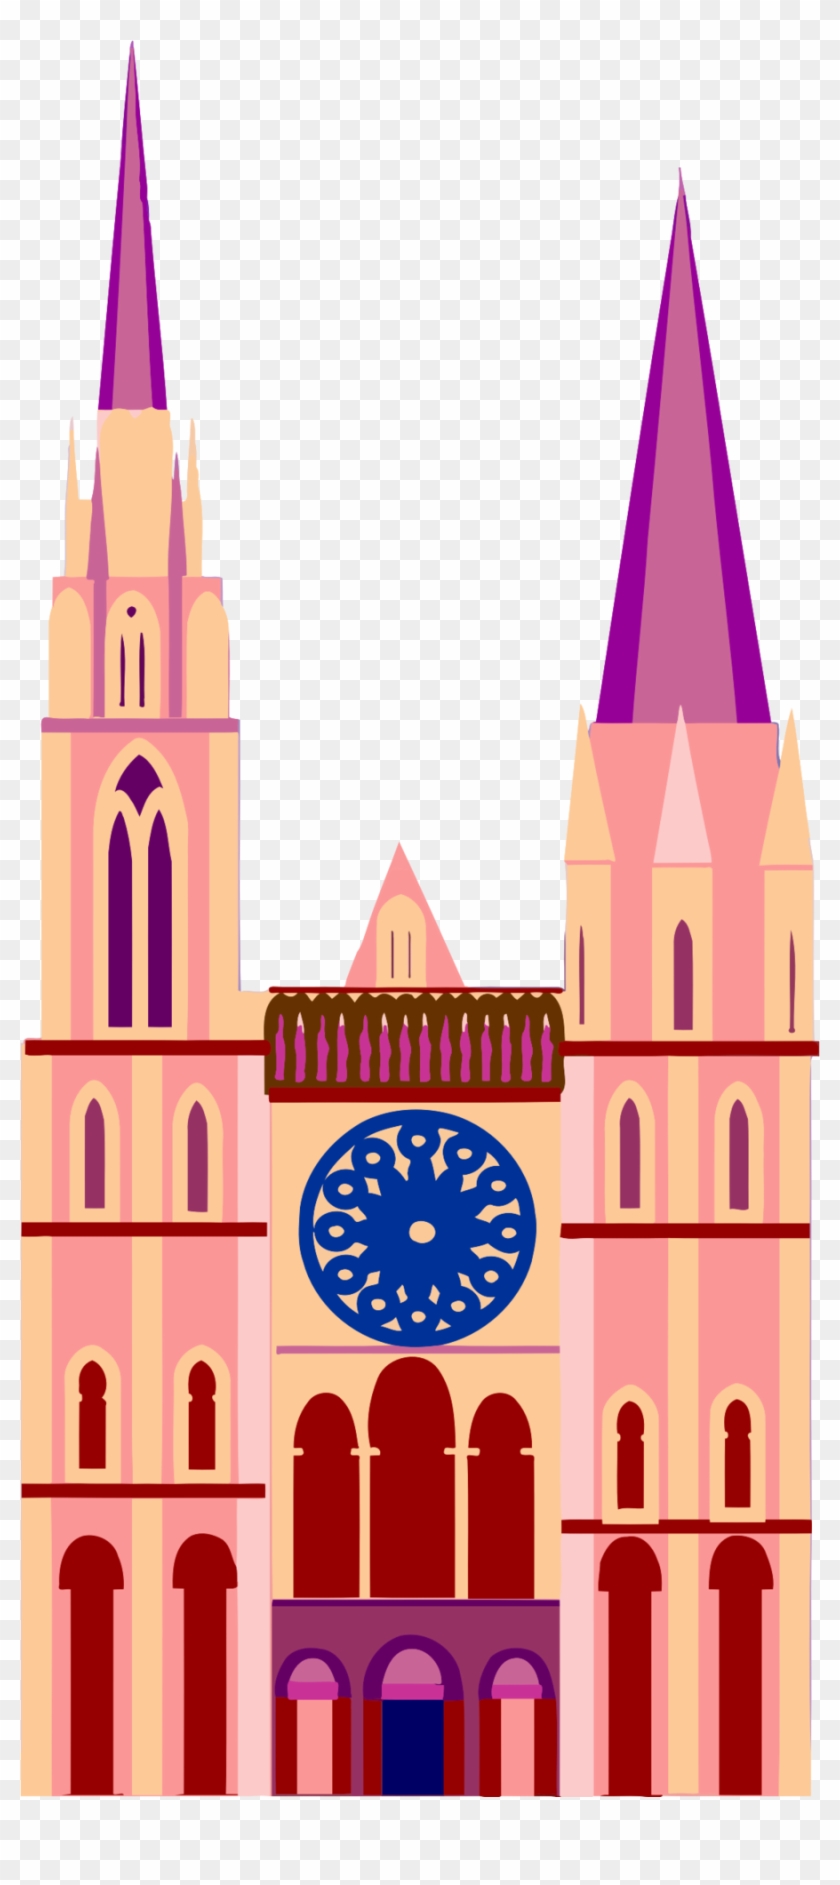 Cathedral Clipart Clip Art - Cathedral Clipart Clip Art #1540510